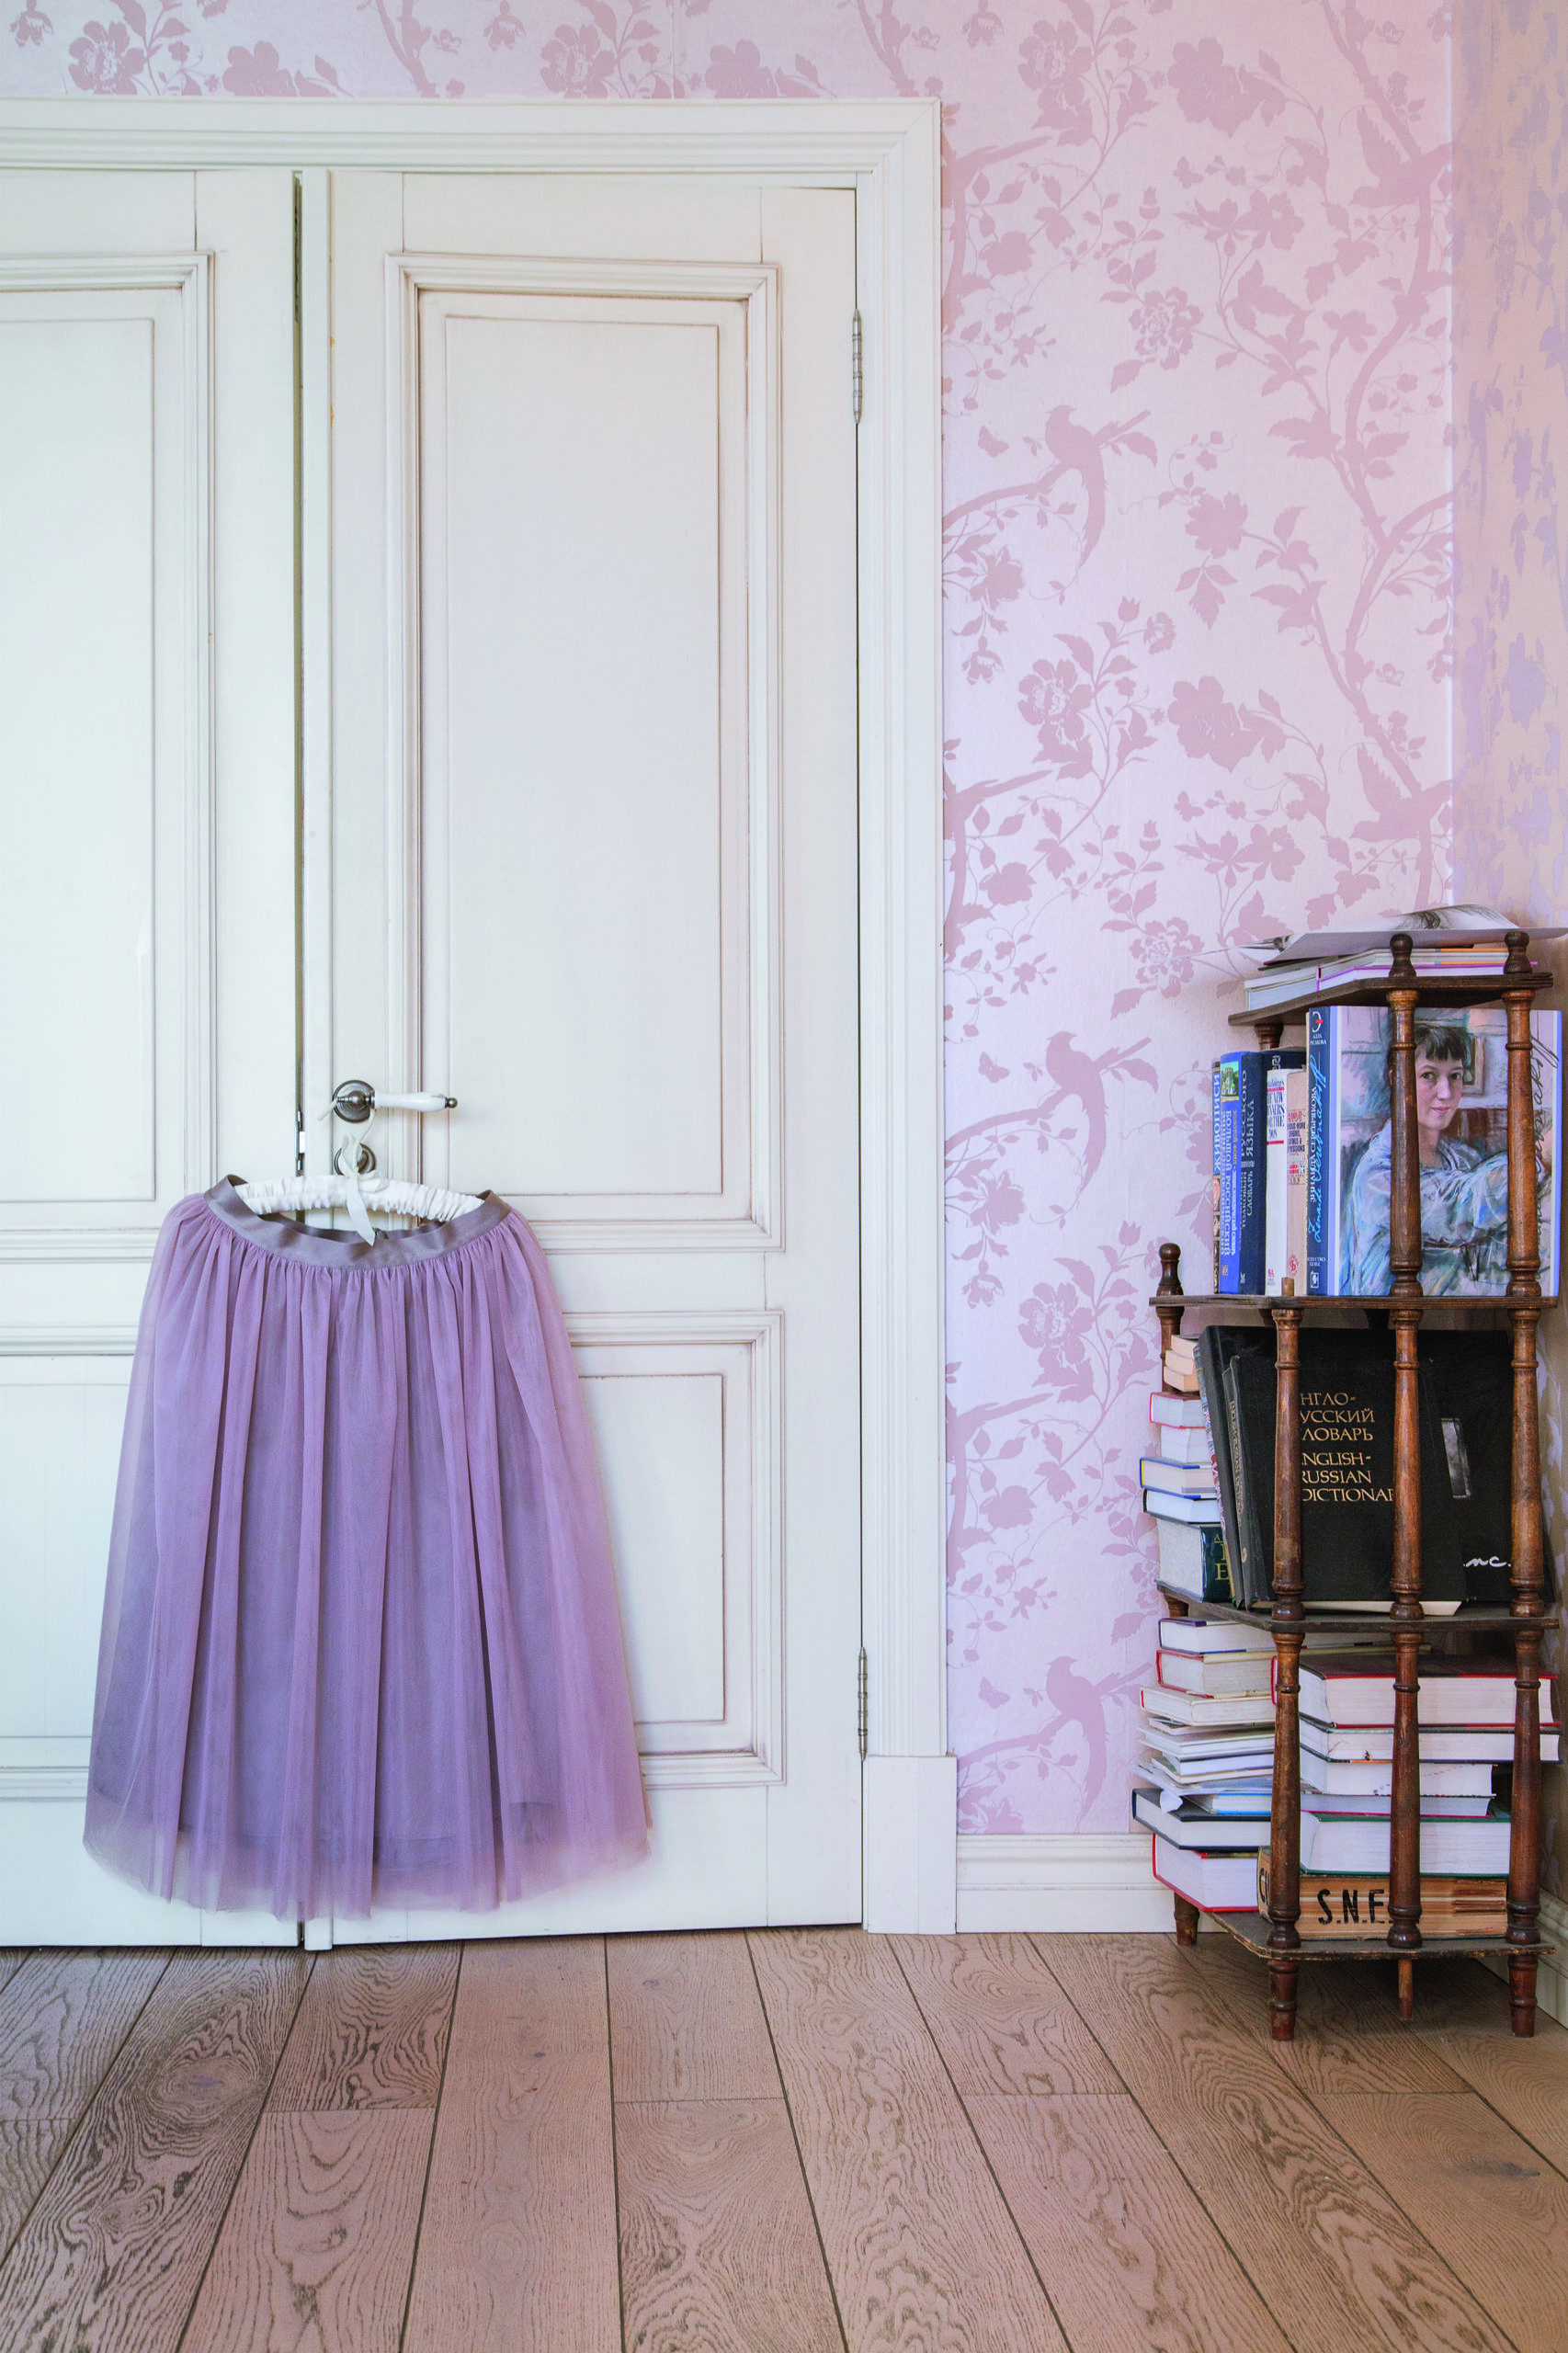 пышная розовая юбка-шопенка висит на двери